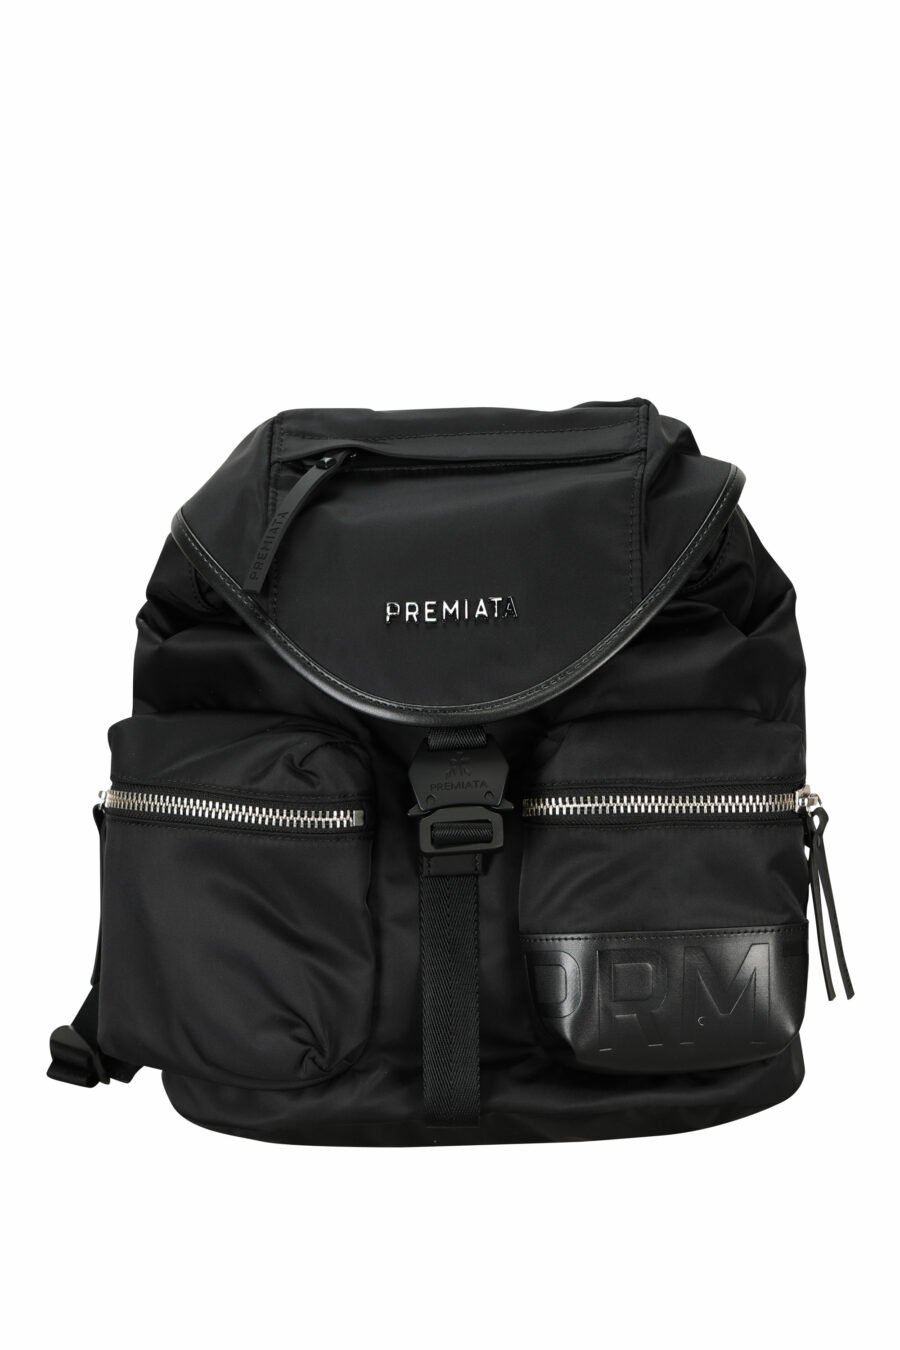 Black backpack LYN 2100 - 8058325910155